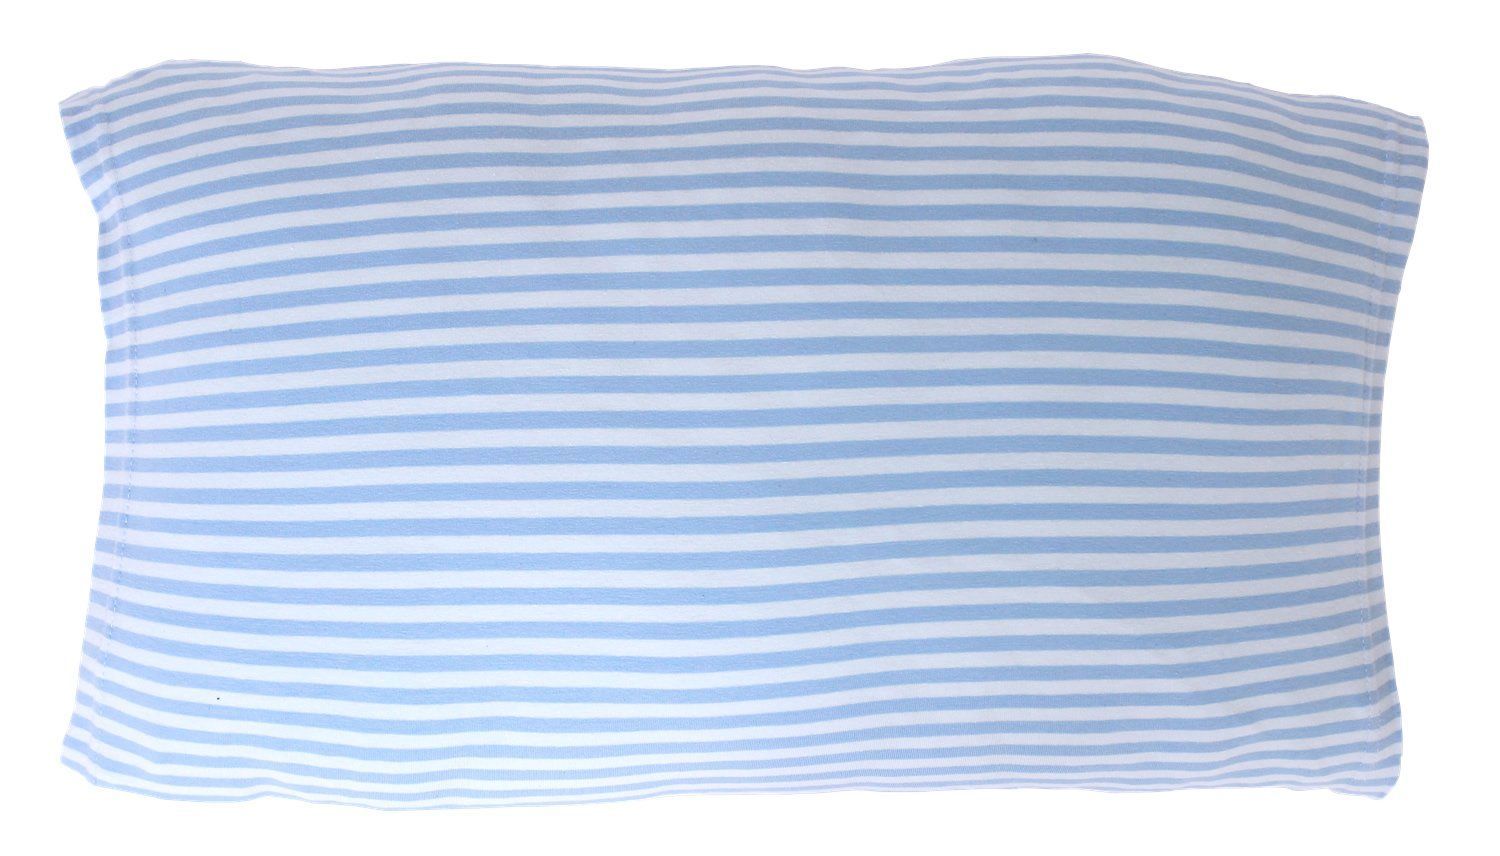 メルカリShops - 【新着商品】メリーナイト 綿100% ニット素材 枕カバー のびのびタイプ ボー